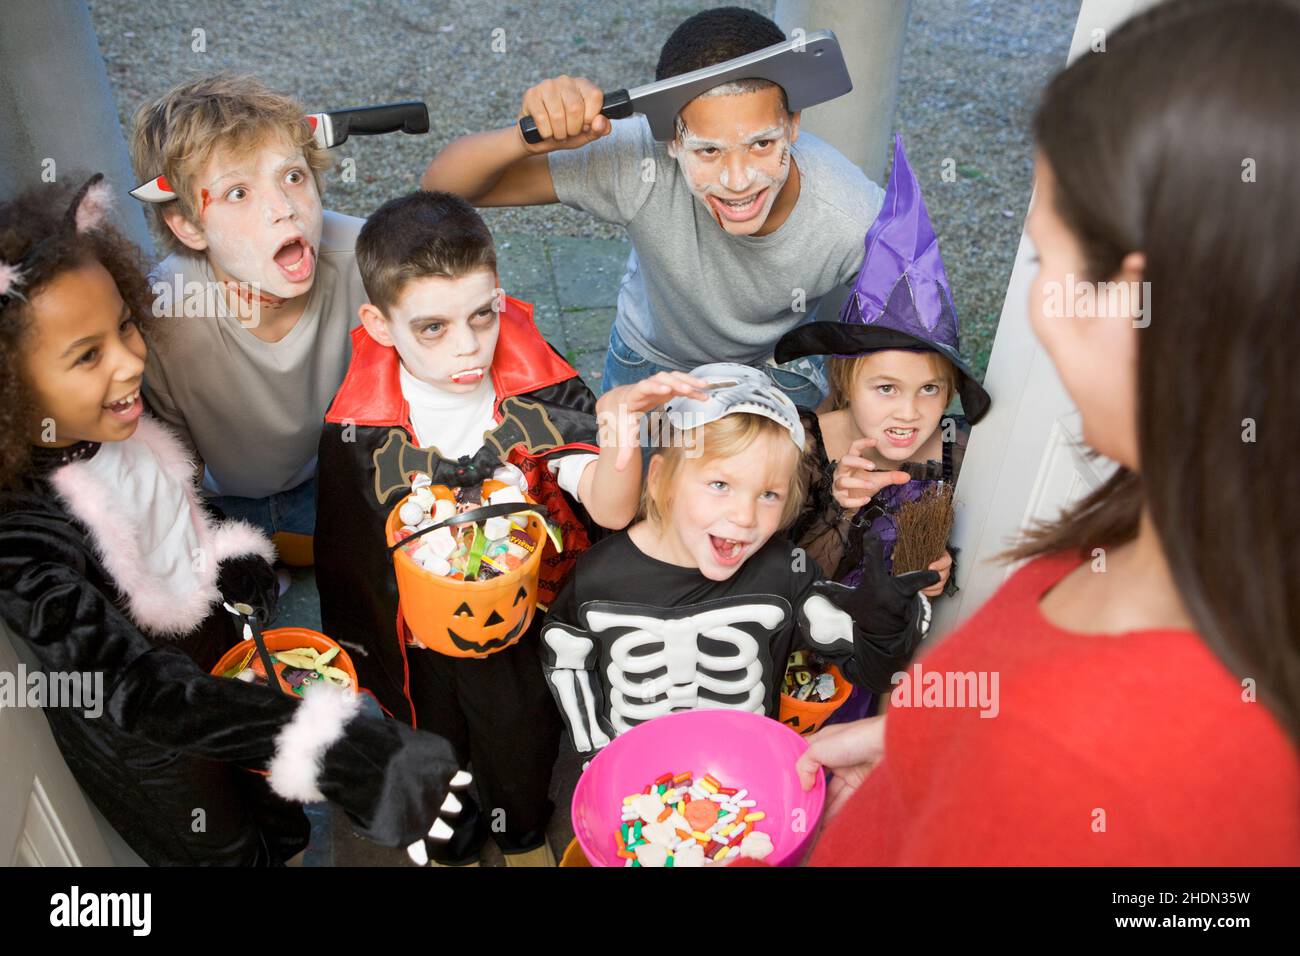 frighten, cladding, halloween, frights, halloweens Stock Photo